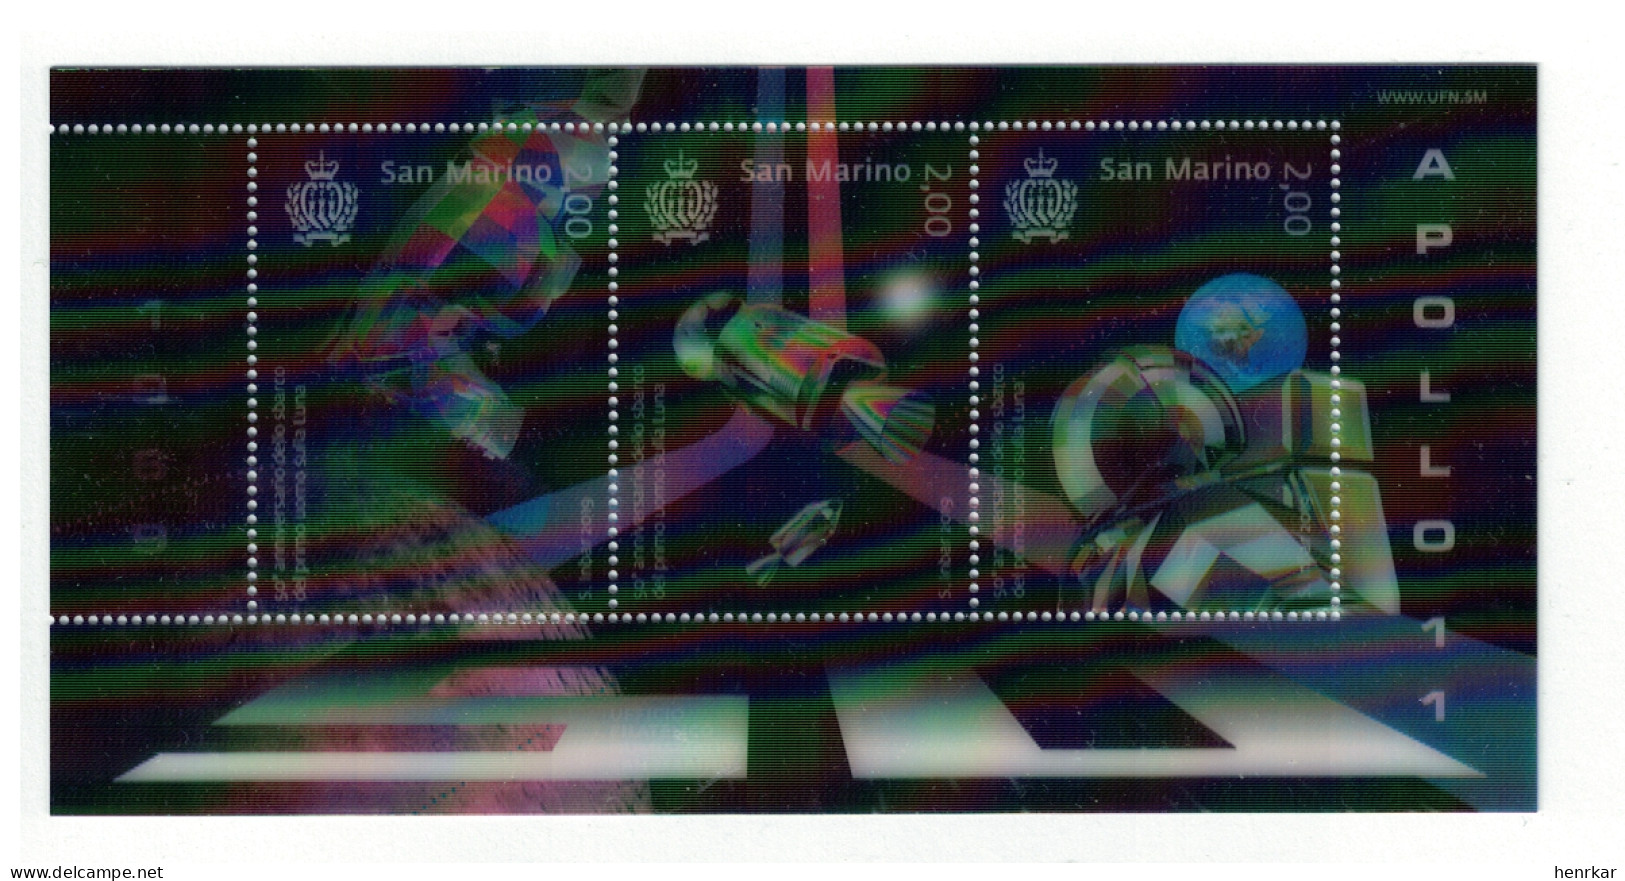 San Marino 2019 Space Hologram 3 Stamp Mini Sheet MNH ** - Nuevos